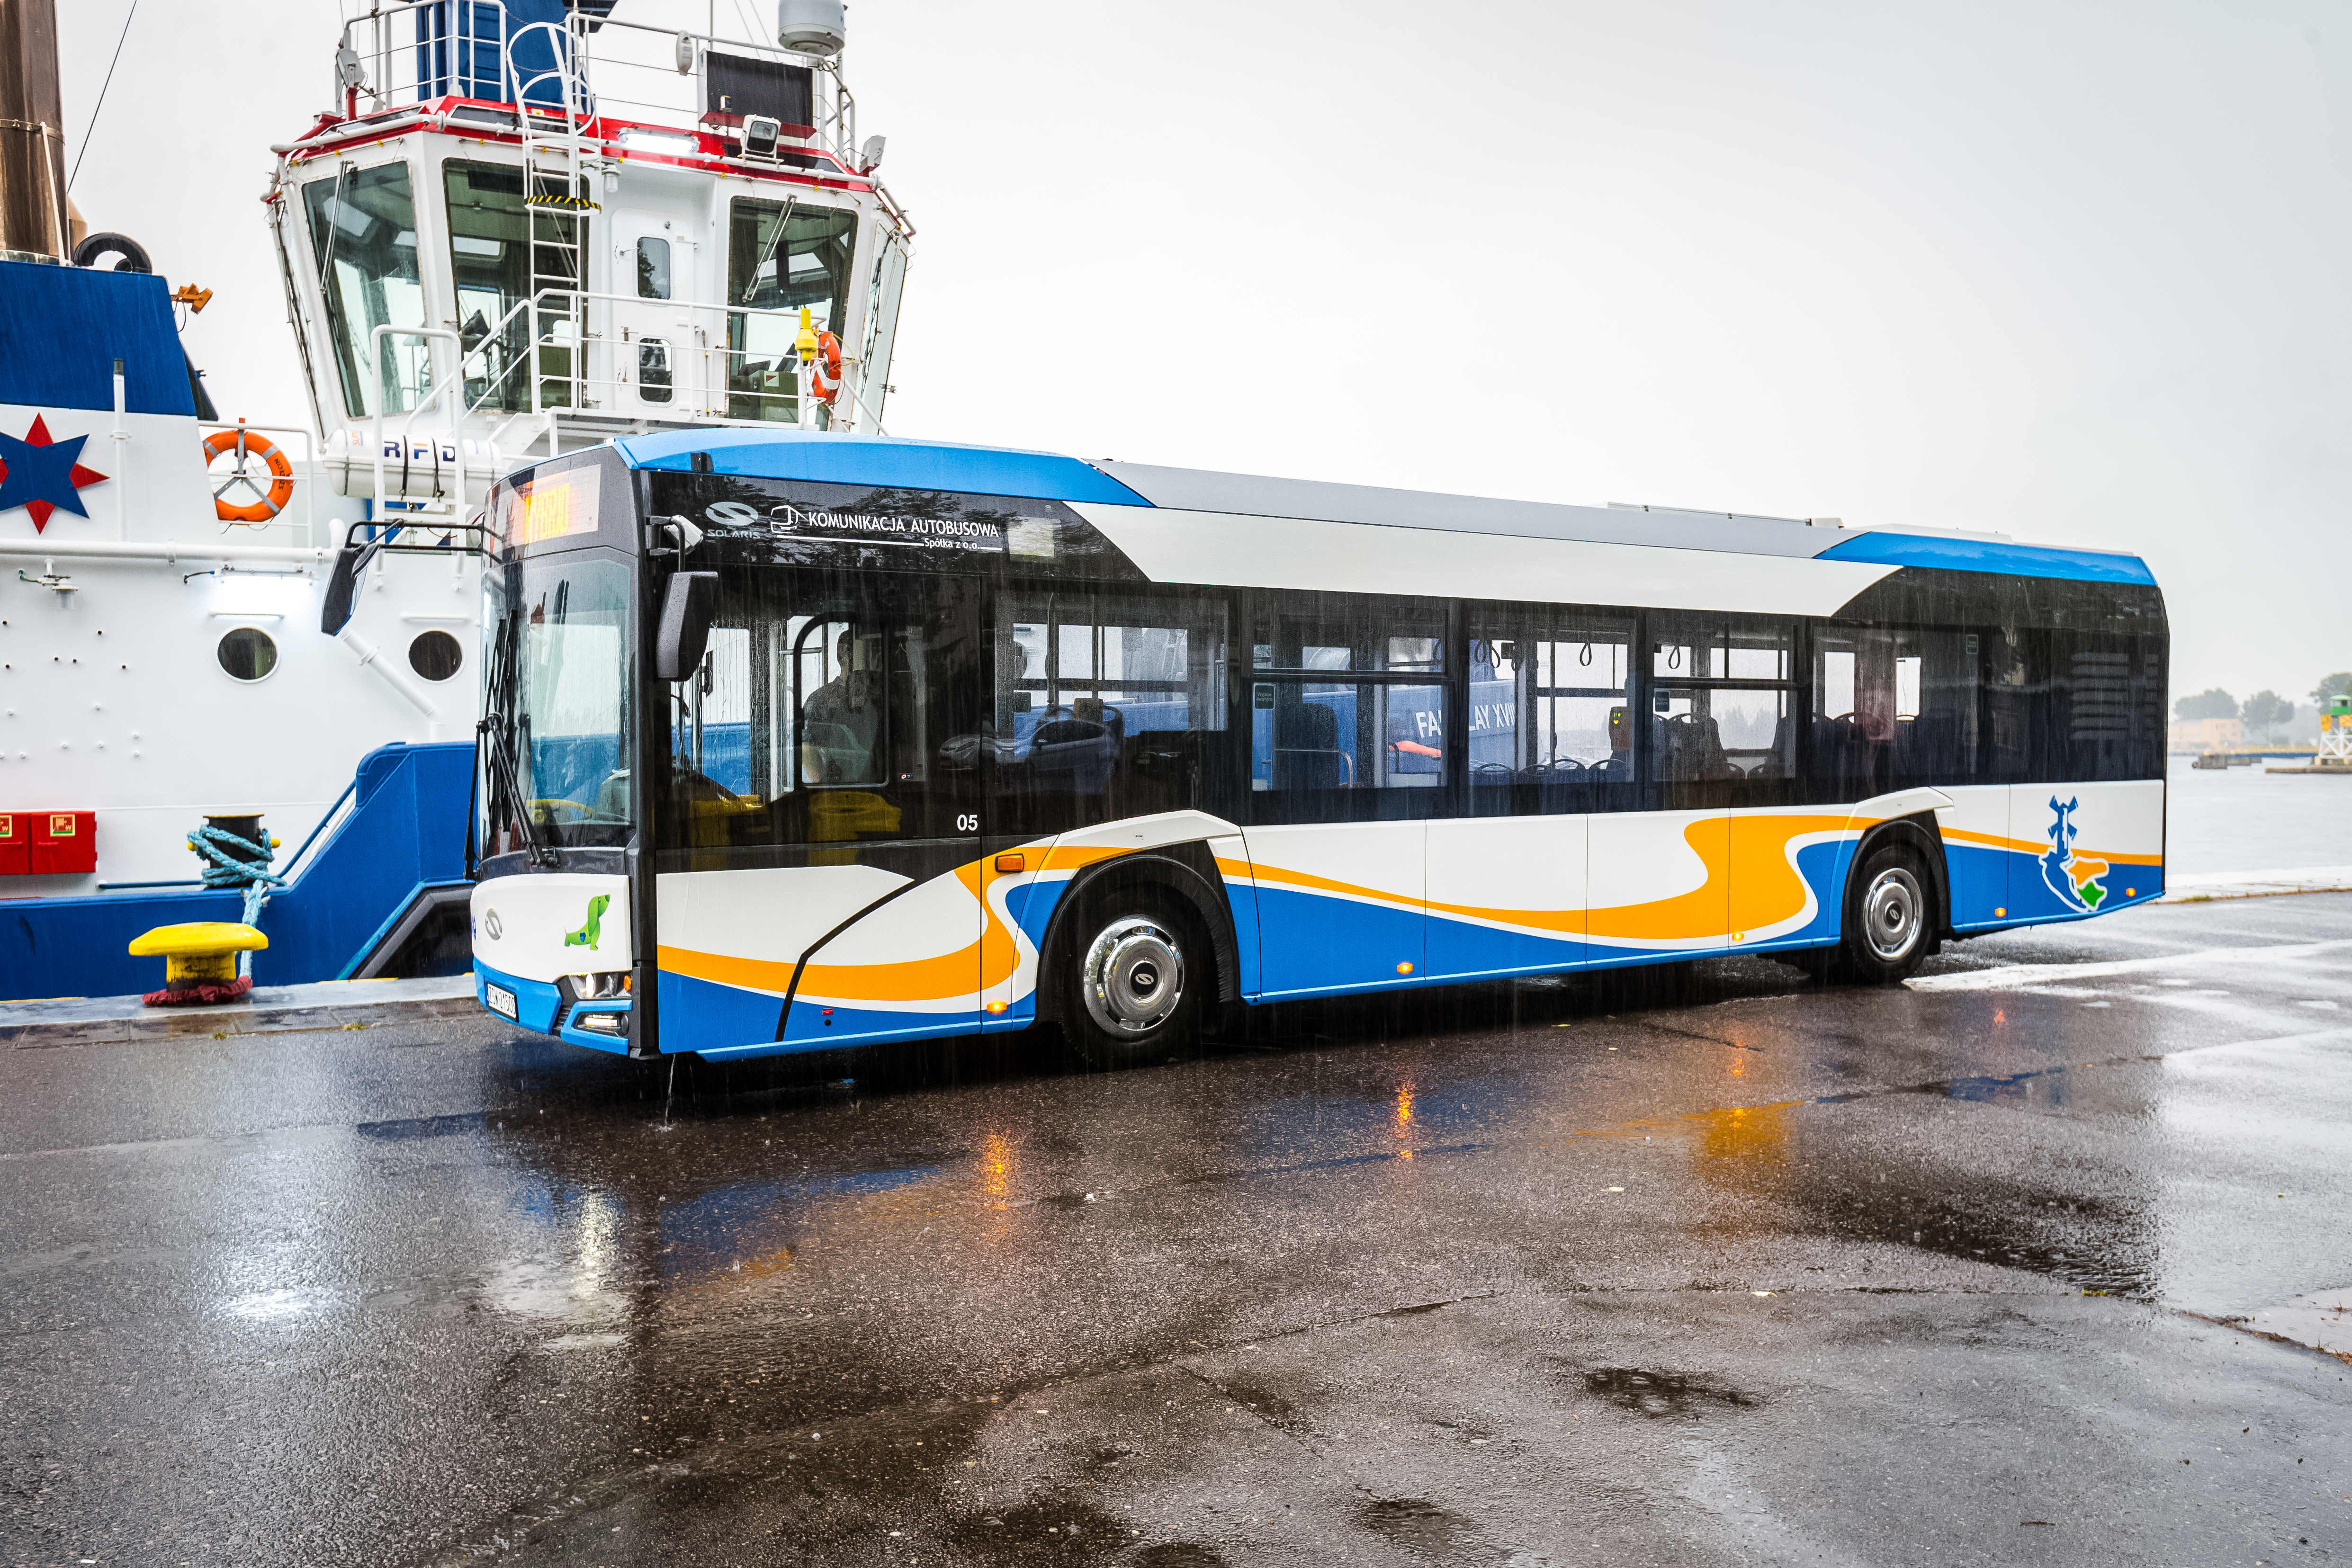 a zdjęciu nowy, niskopodłogowy i ekologiczny autobus dla mieszkańców Świnoujścia. Karoseria autobusu pomalowana jest w trzech kolorach" niebieskim, białym i żółtym.